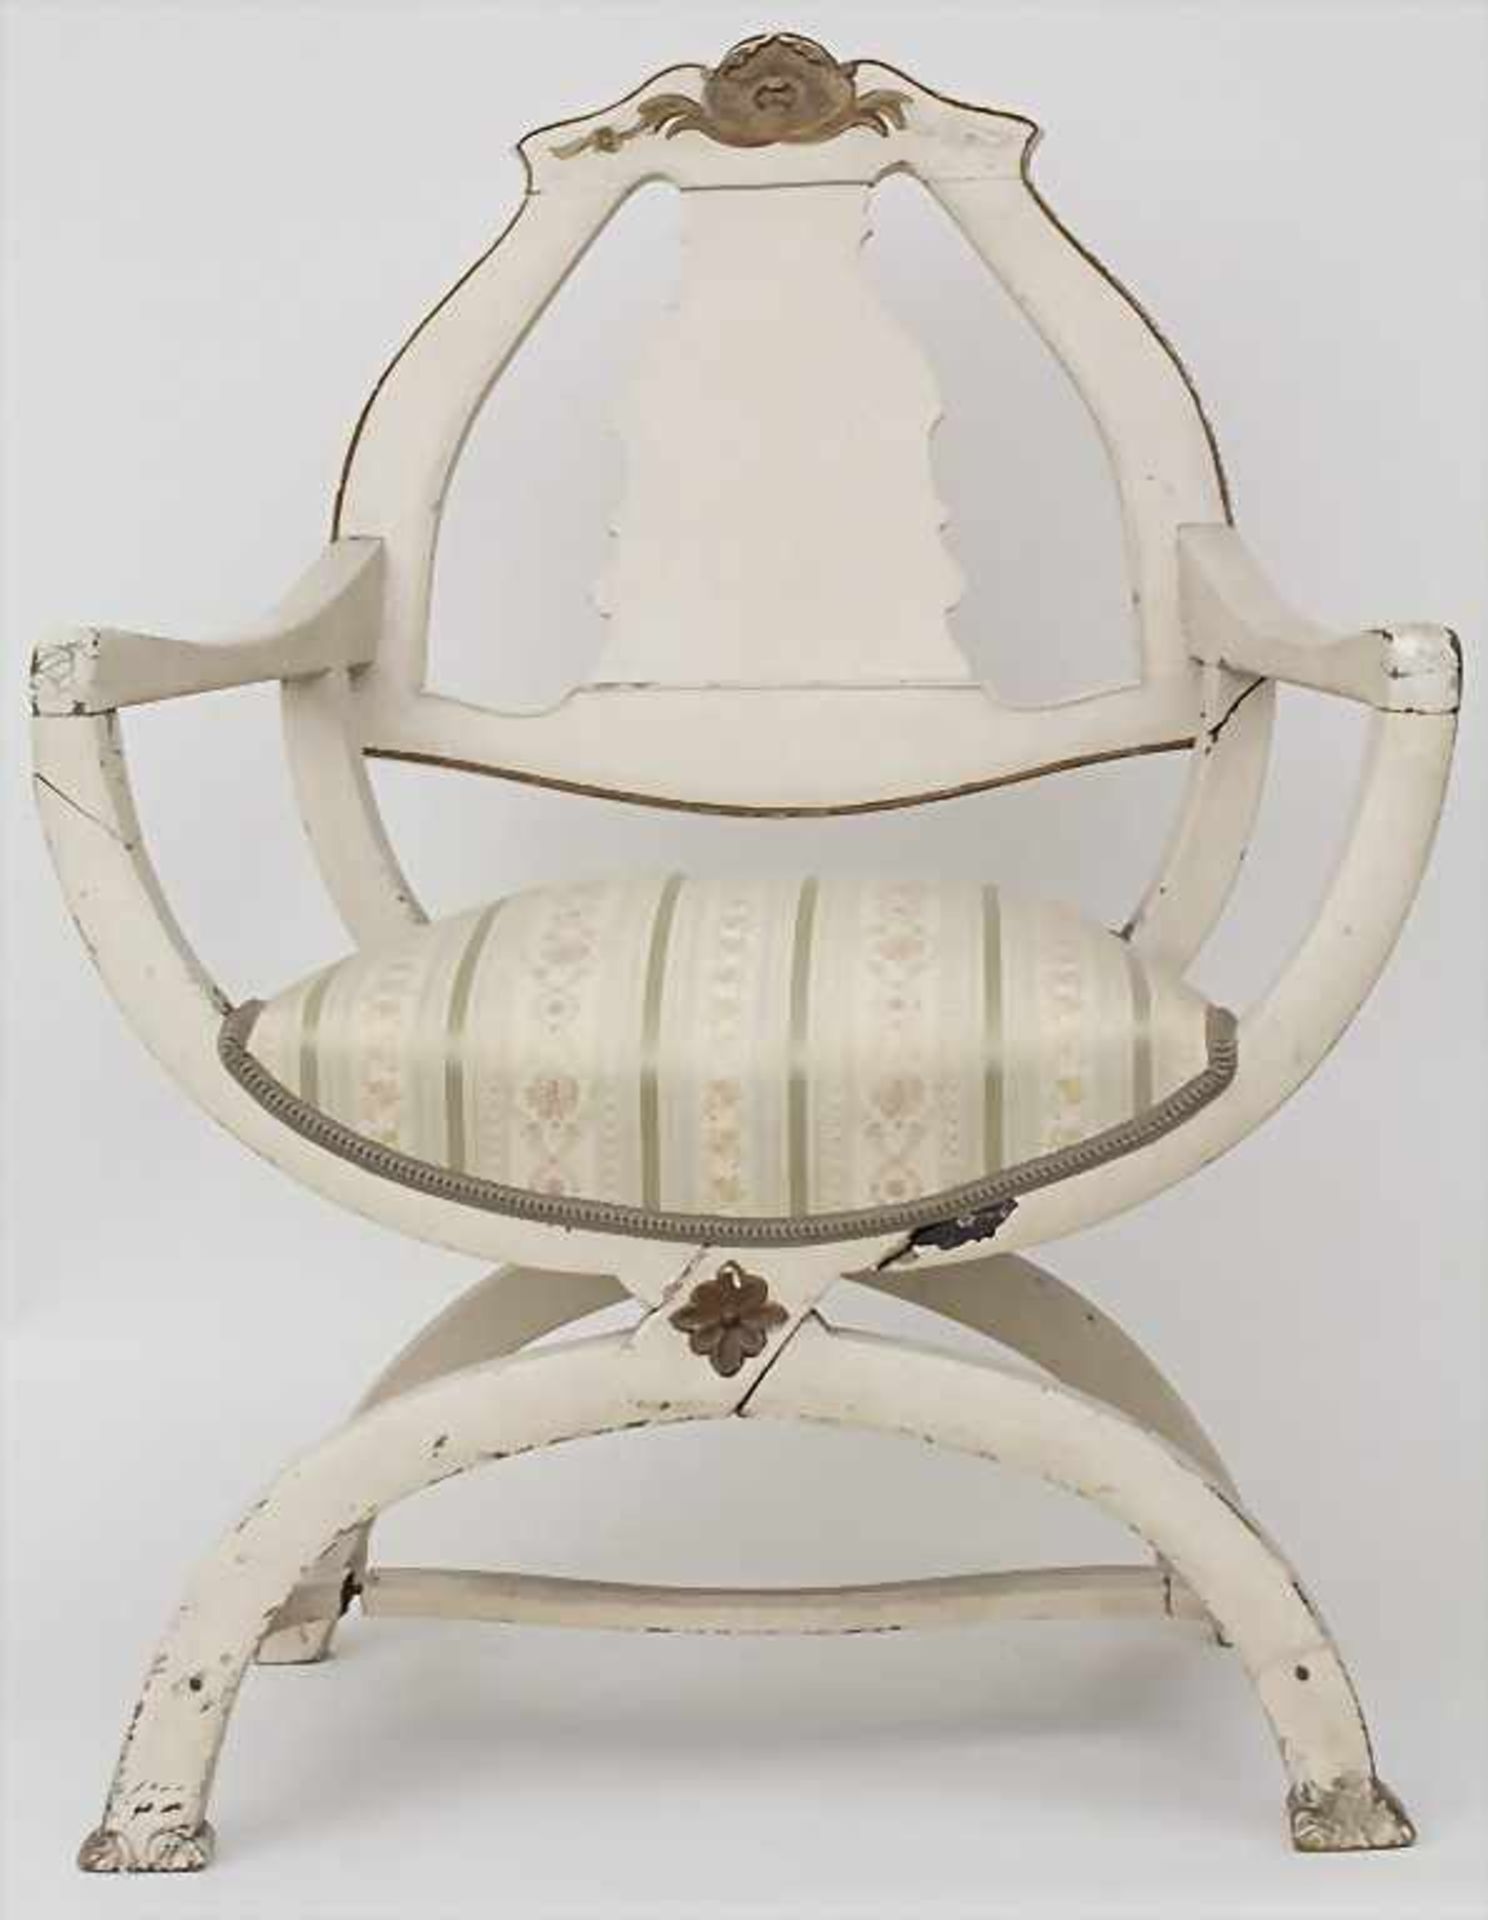 Scherenstuhl / A folding chair, 18. Jh.Material: Holz, cremeweiß staffiert, partiell